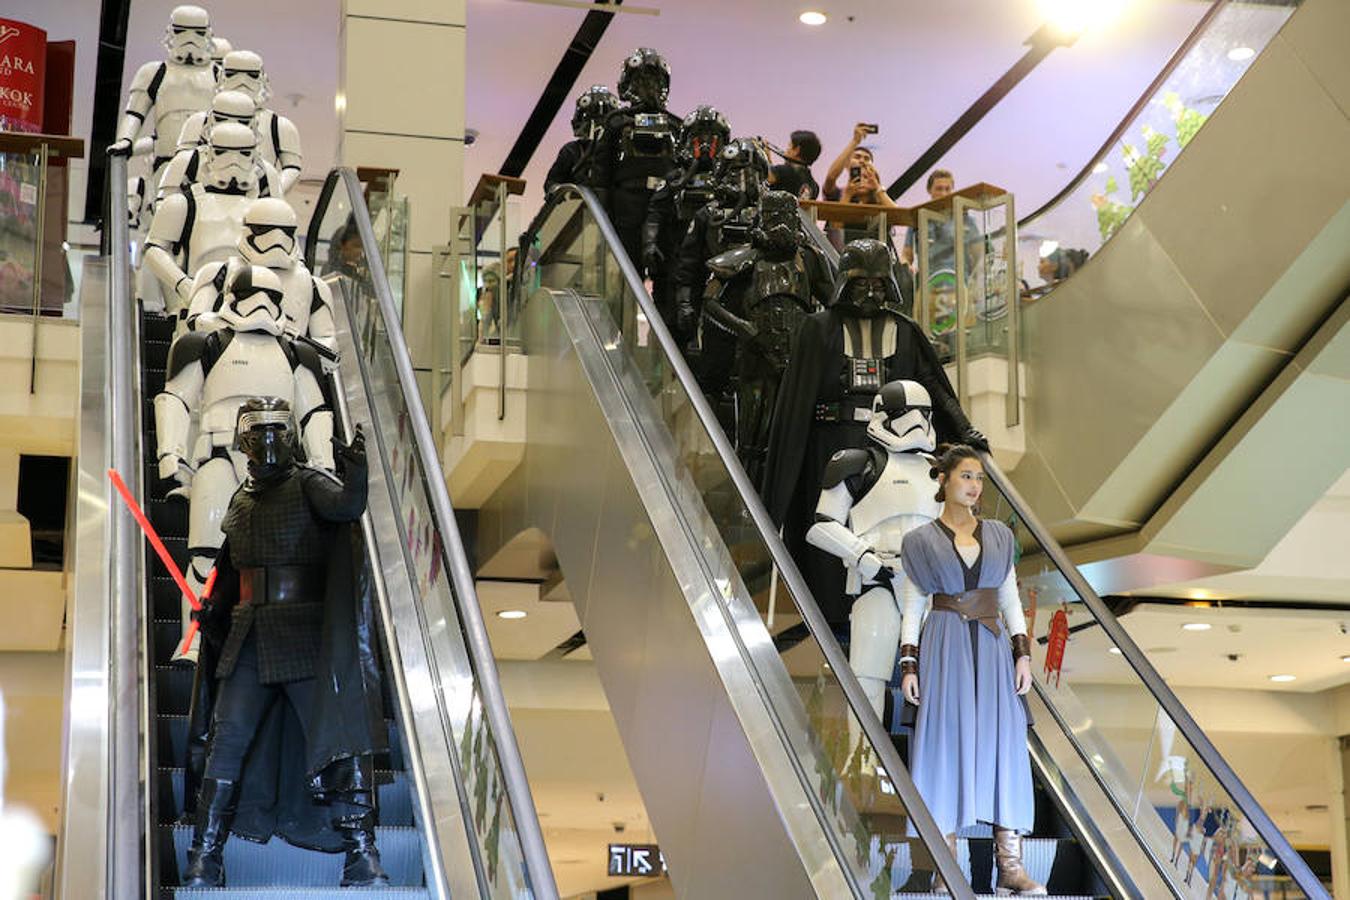 Personas caracterizadas de personales de 'Star Wars' asisten a un evento por el estreno de 'Los últimos Jedi' en Bangkok.